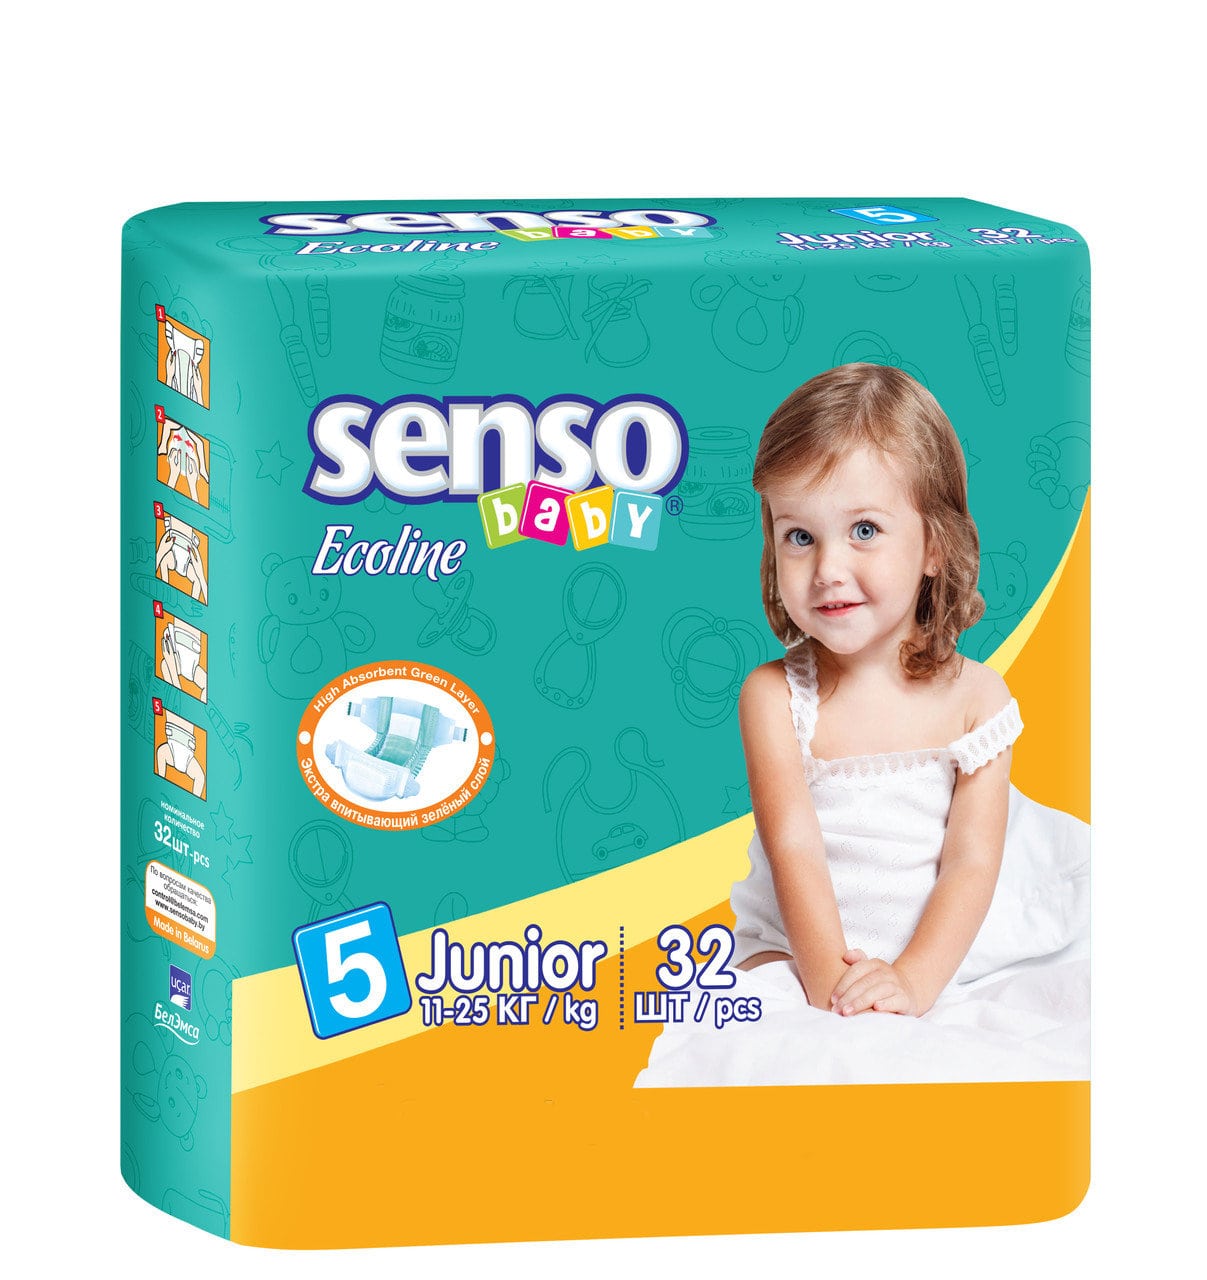 Детские подгузники "Senso Baby" Ecoline 11 25кг 32шт